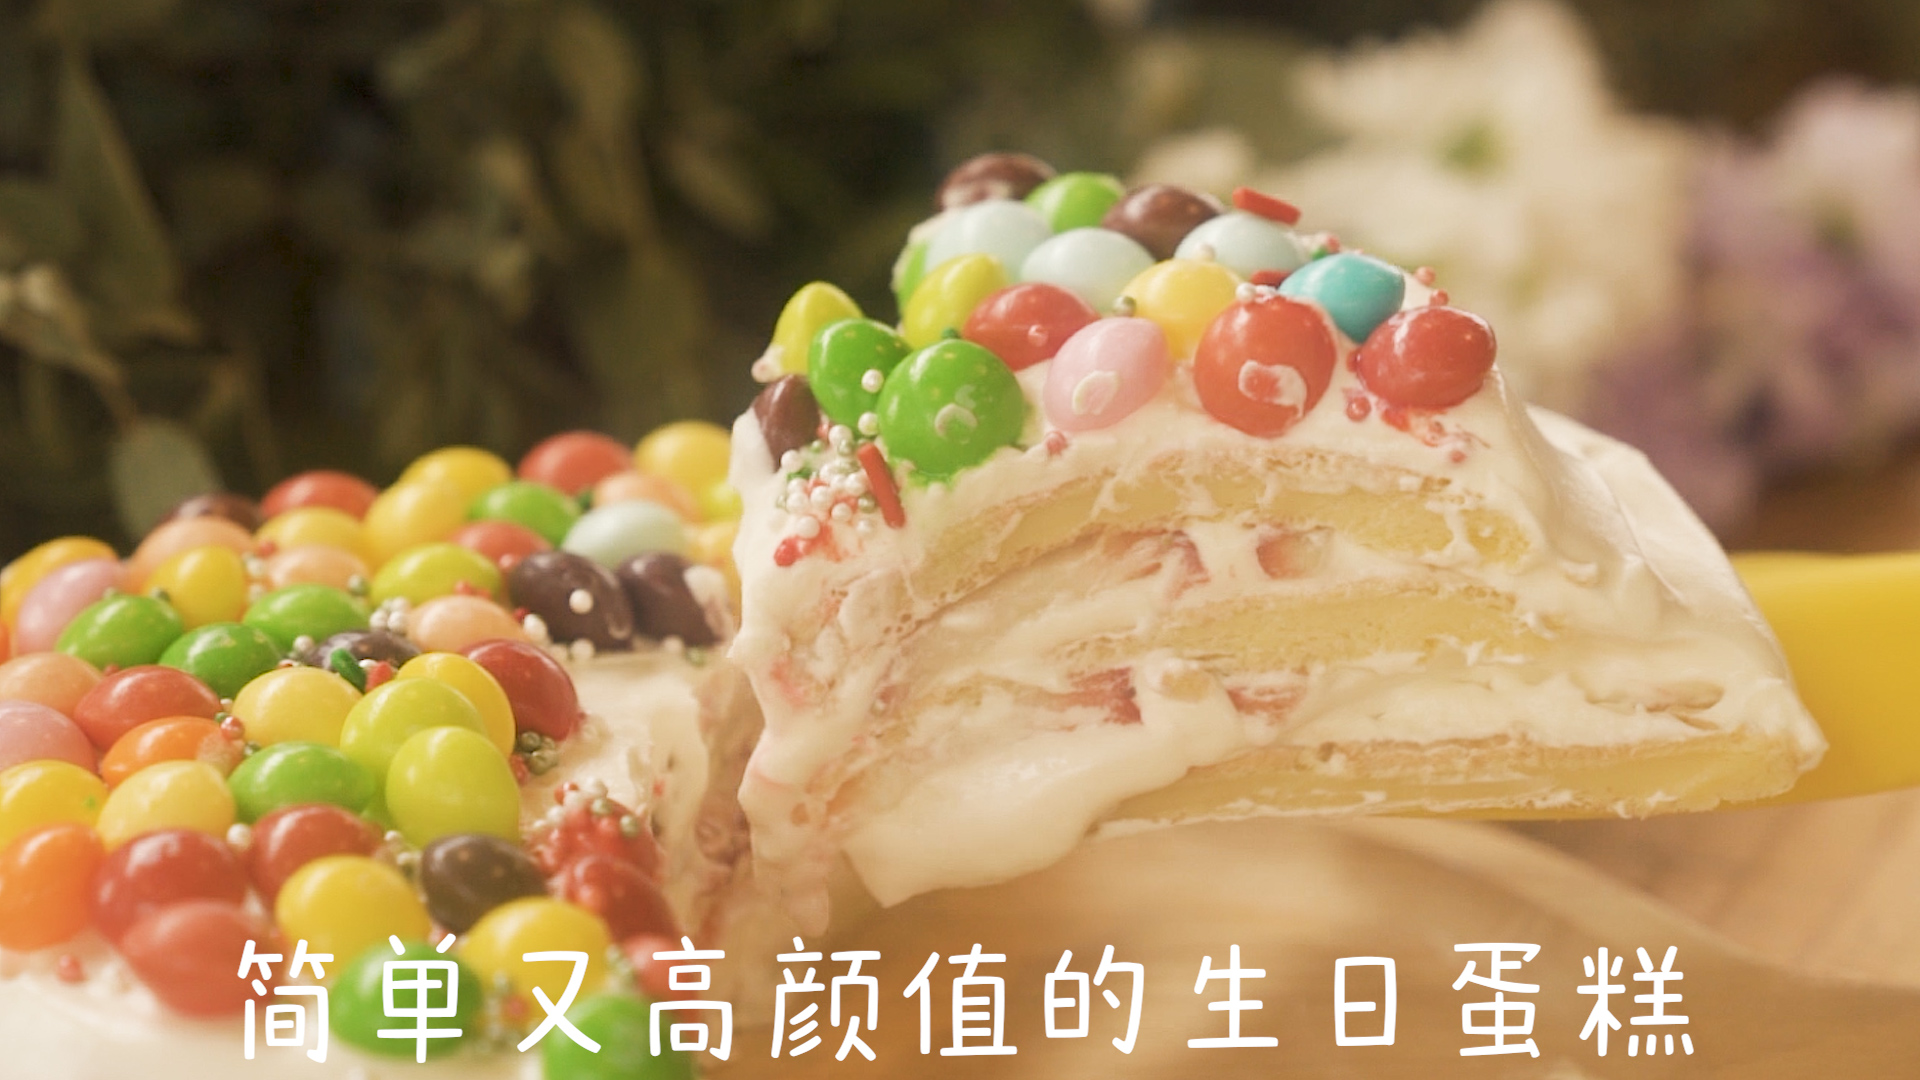 彩虹慕斯蛋糕高清图片大全【蛋糕图片】_百悦米西点培训